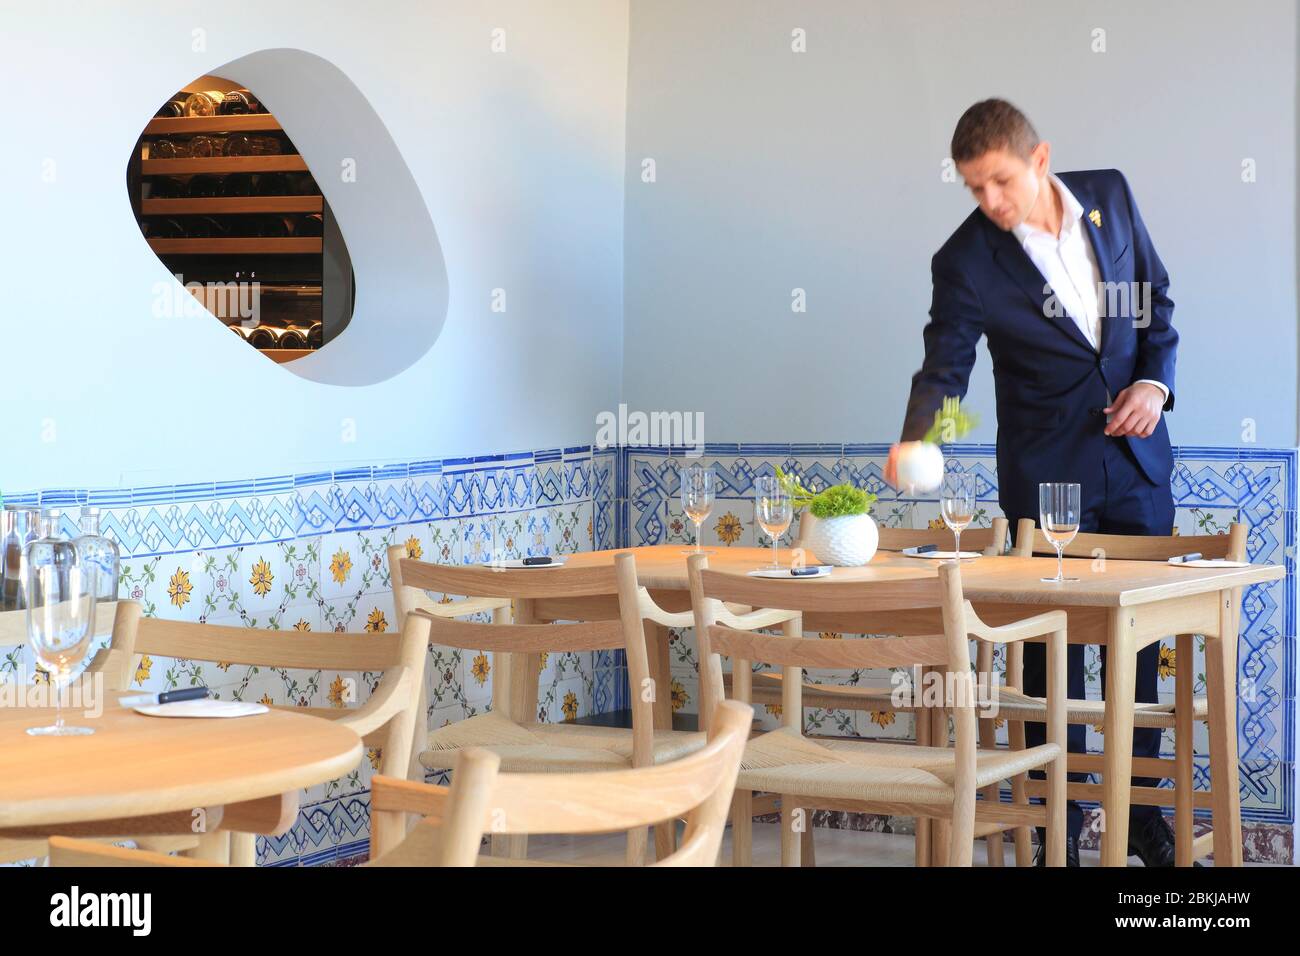 Portugal, Lisbonne, Chiado, restaurant gastronomique Epur par le chef français Vincent Farges Banque D'Images